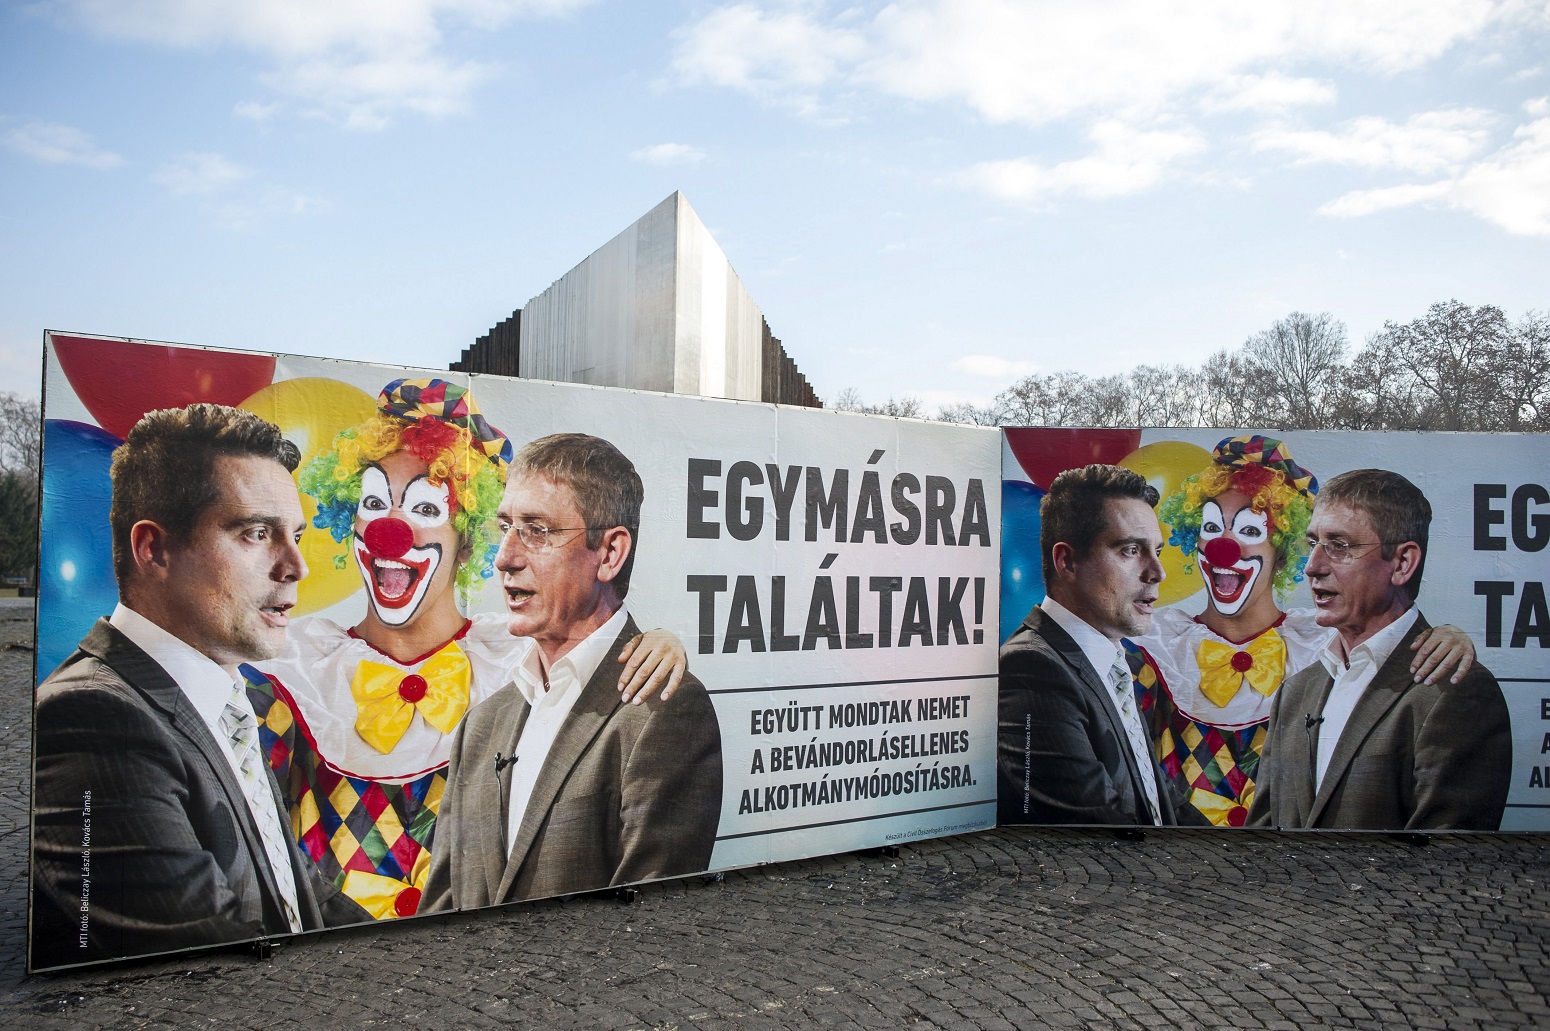 Budapest, 2016. december 7. A Civil Összefogás Fórum (CÖF) újabb plakátja a budapesti Ötvenhatosok terén 2016. december 7-én. A kép Vona Gábor Jobbik-elnököt és Gyurcsány Ferenc DK-elnököt öleli át a korábbi plakátkampányból ismert bohóc, a felirat pedig azt hirdeti: Egymásra találtak! Együtt mondtak nemet a bevándorlásellenes alkotmánymódosításra. MTI Fotó: Marjai János